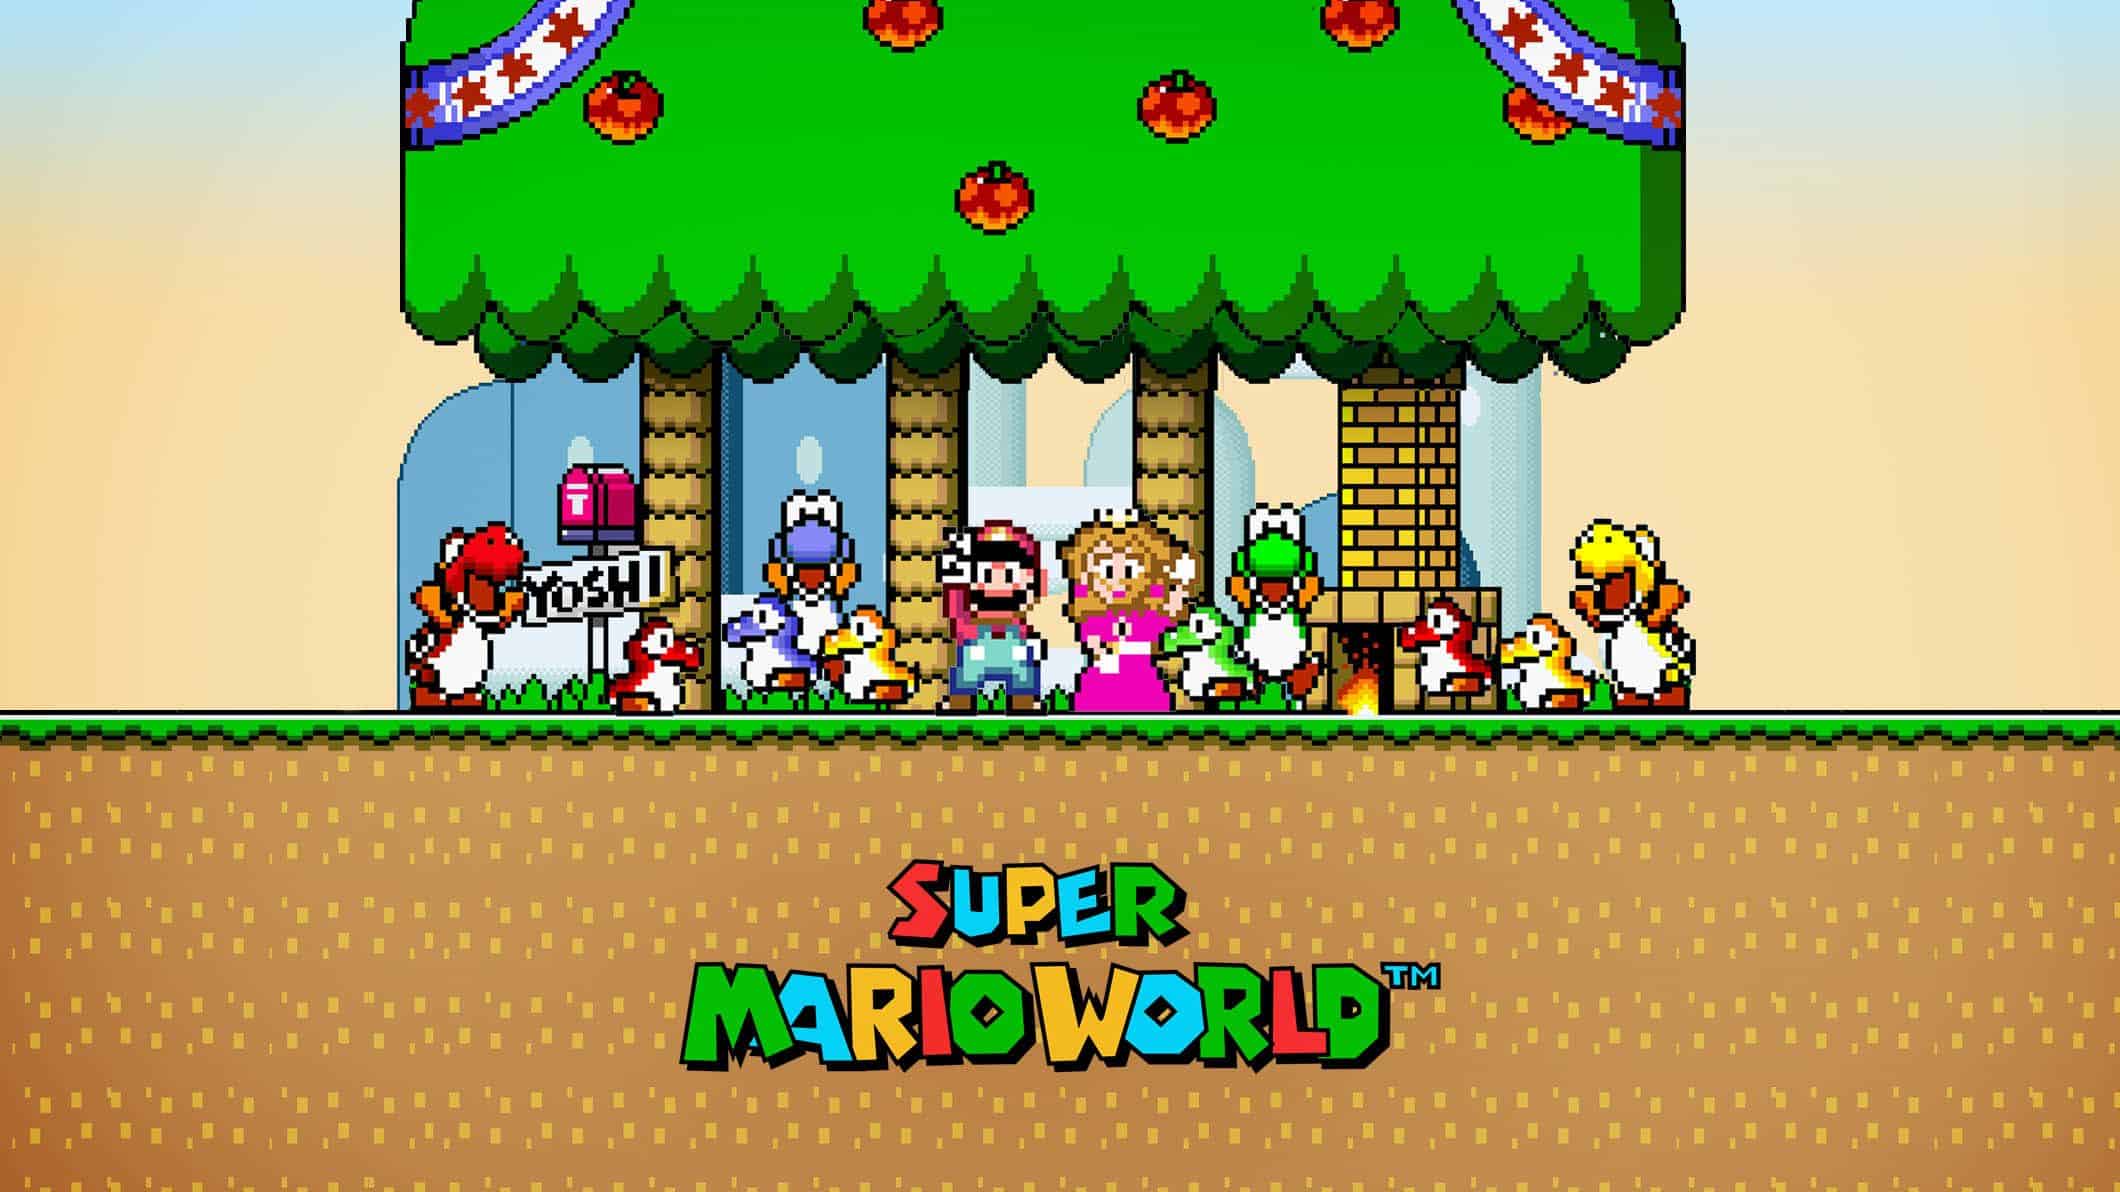 Best Super Mario Games - Super Mario World